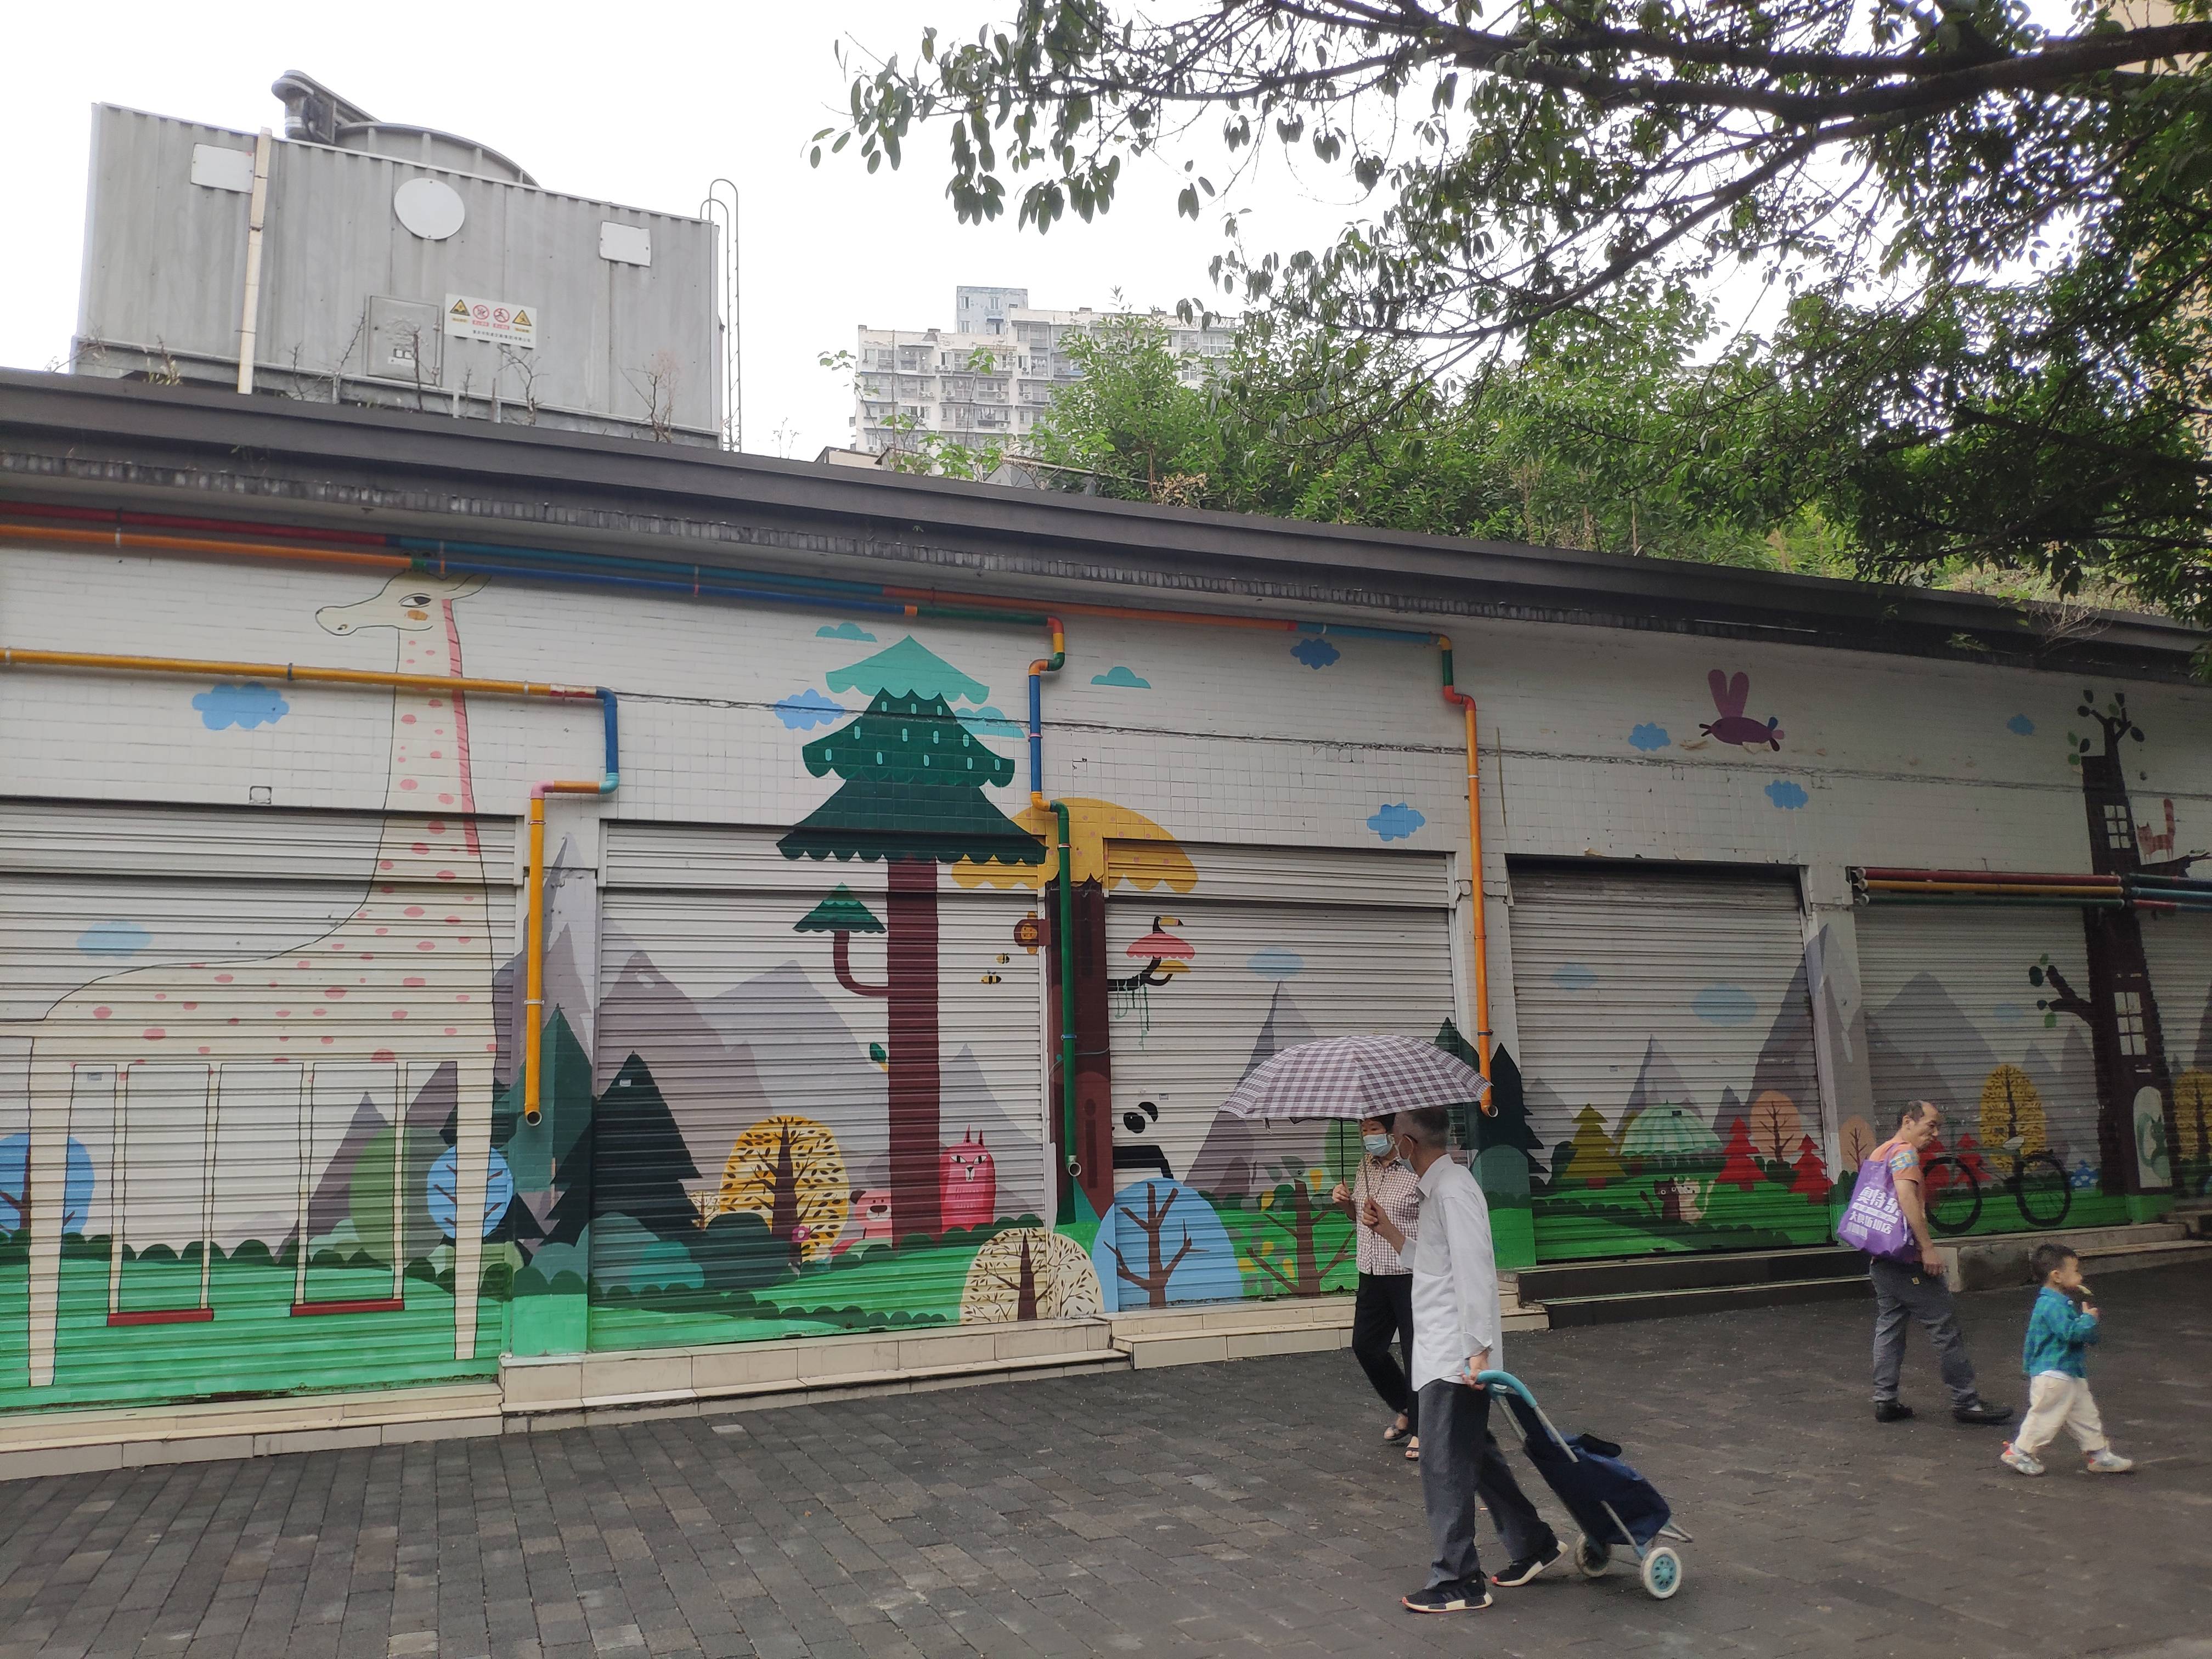 重庆街头现创意涂鸦门面,10个门面卷帘门彩绘成童话世界